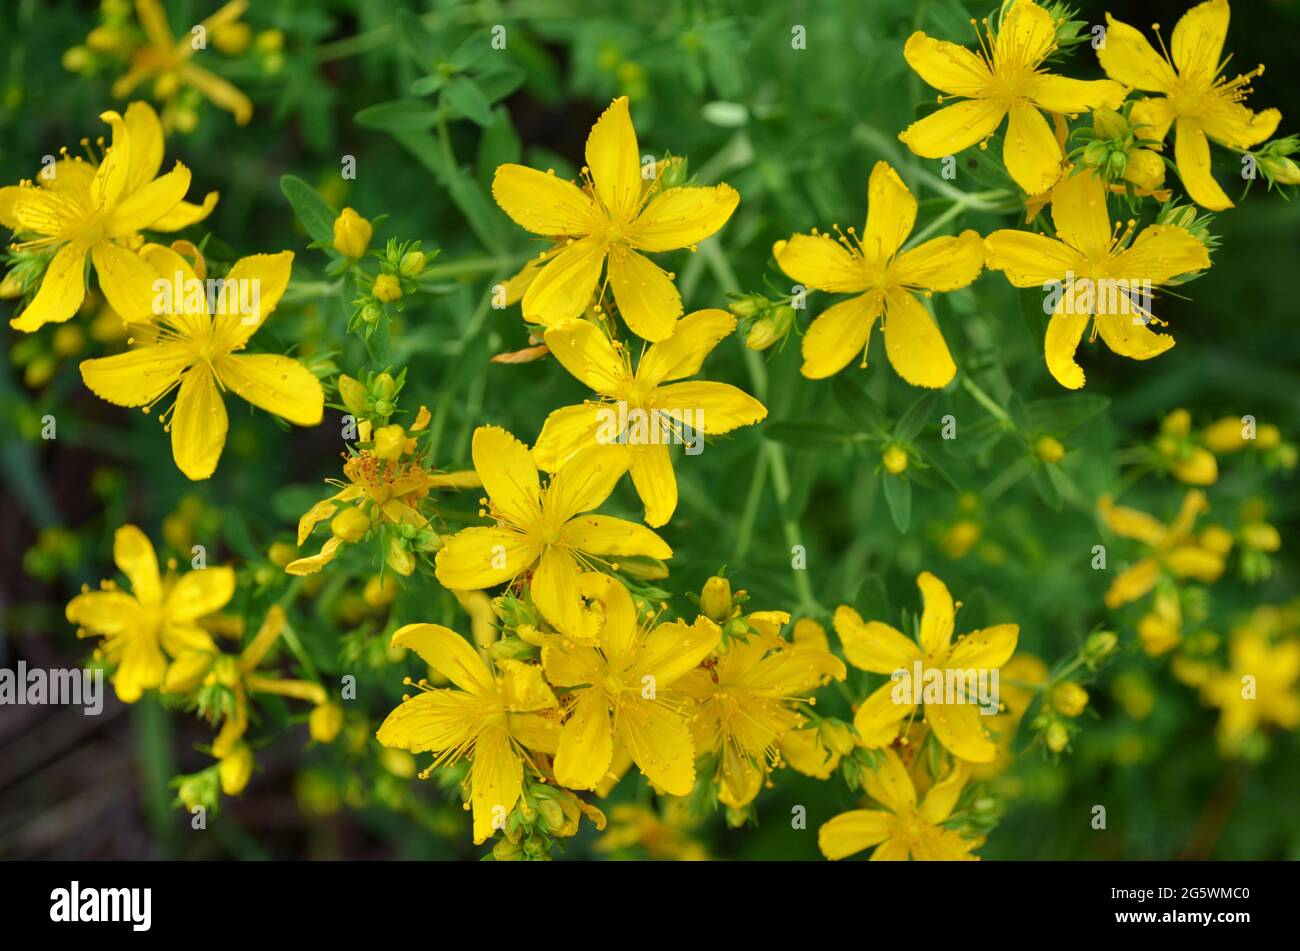 Gelbe Blüten von hypericum perforatum als blühender Hintergrund. Blühende krautige mehrjährige Pflanze in der Volksmedizin verwendet. Stockfoto